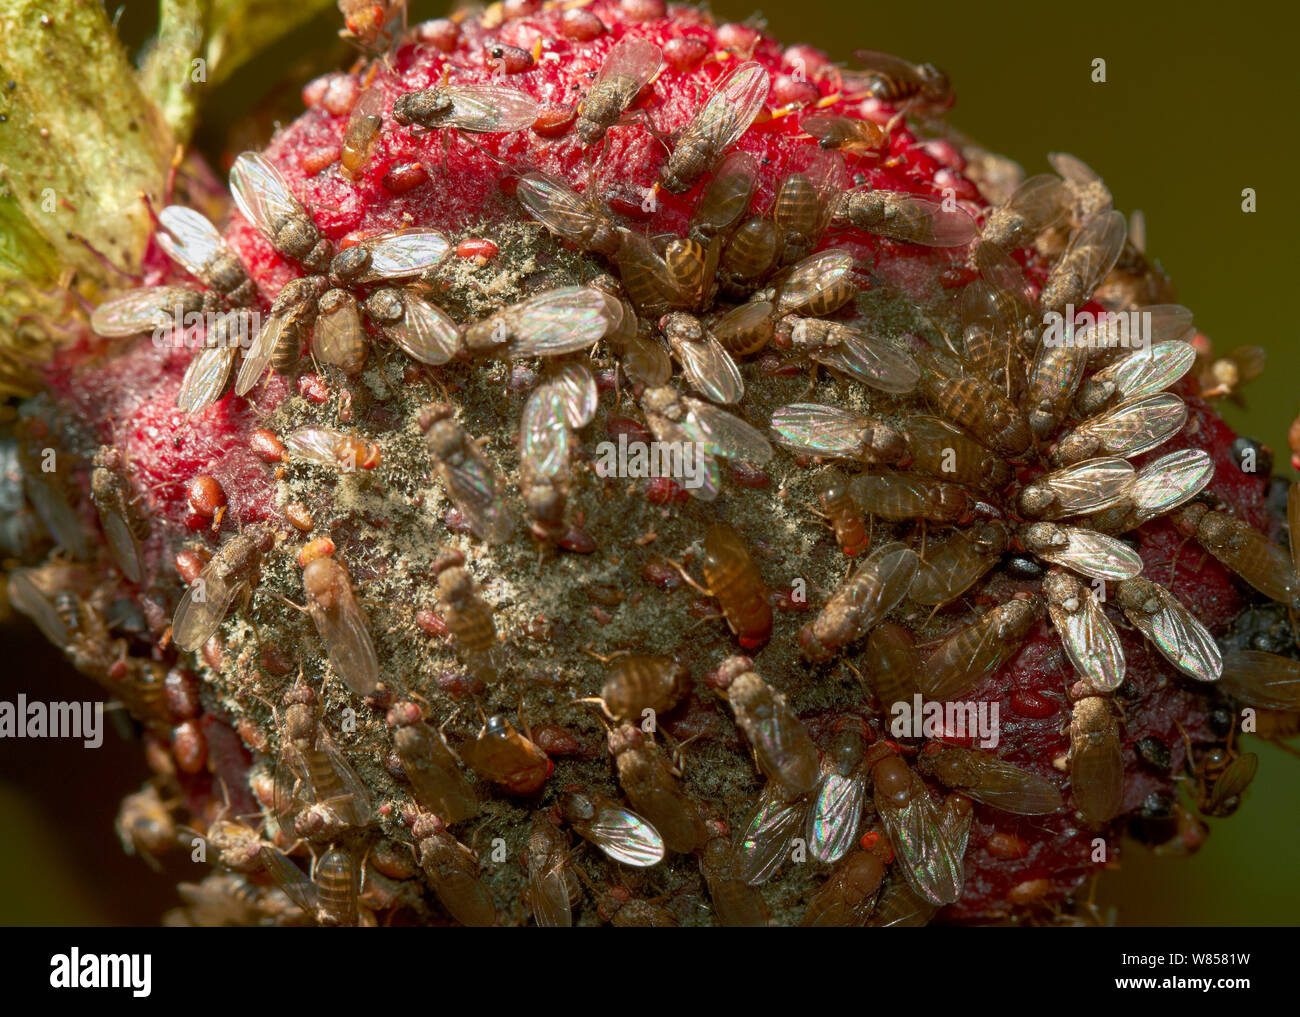 Fruit flies (Drosophila melanogaster) on rotting strawberry, England, UK, August Stock Photo